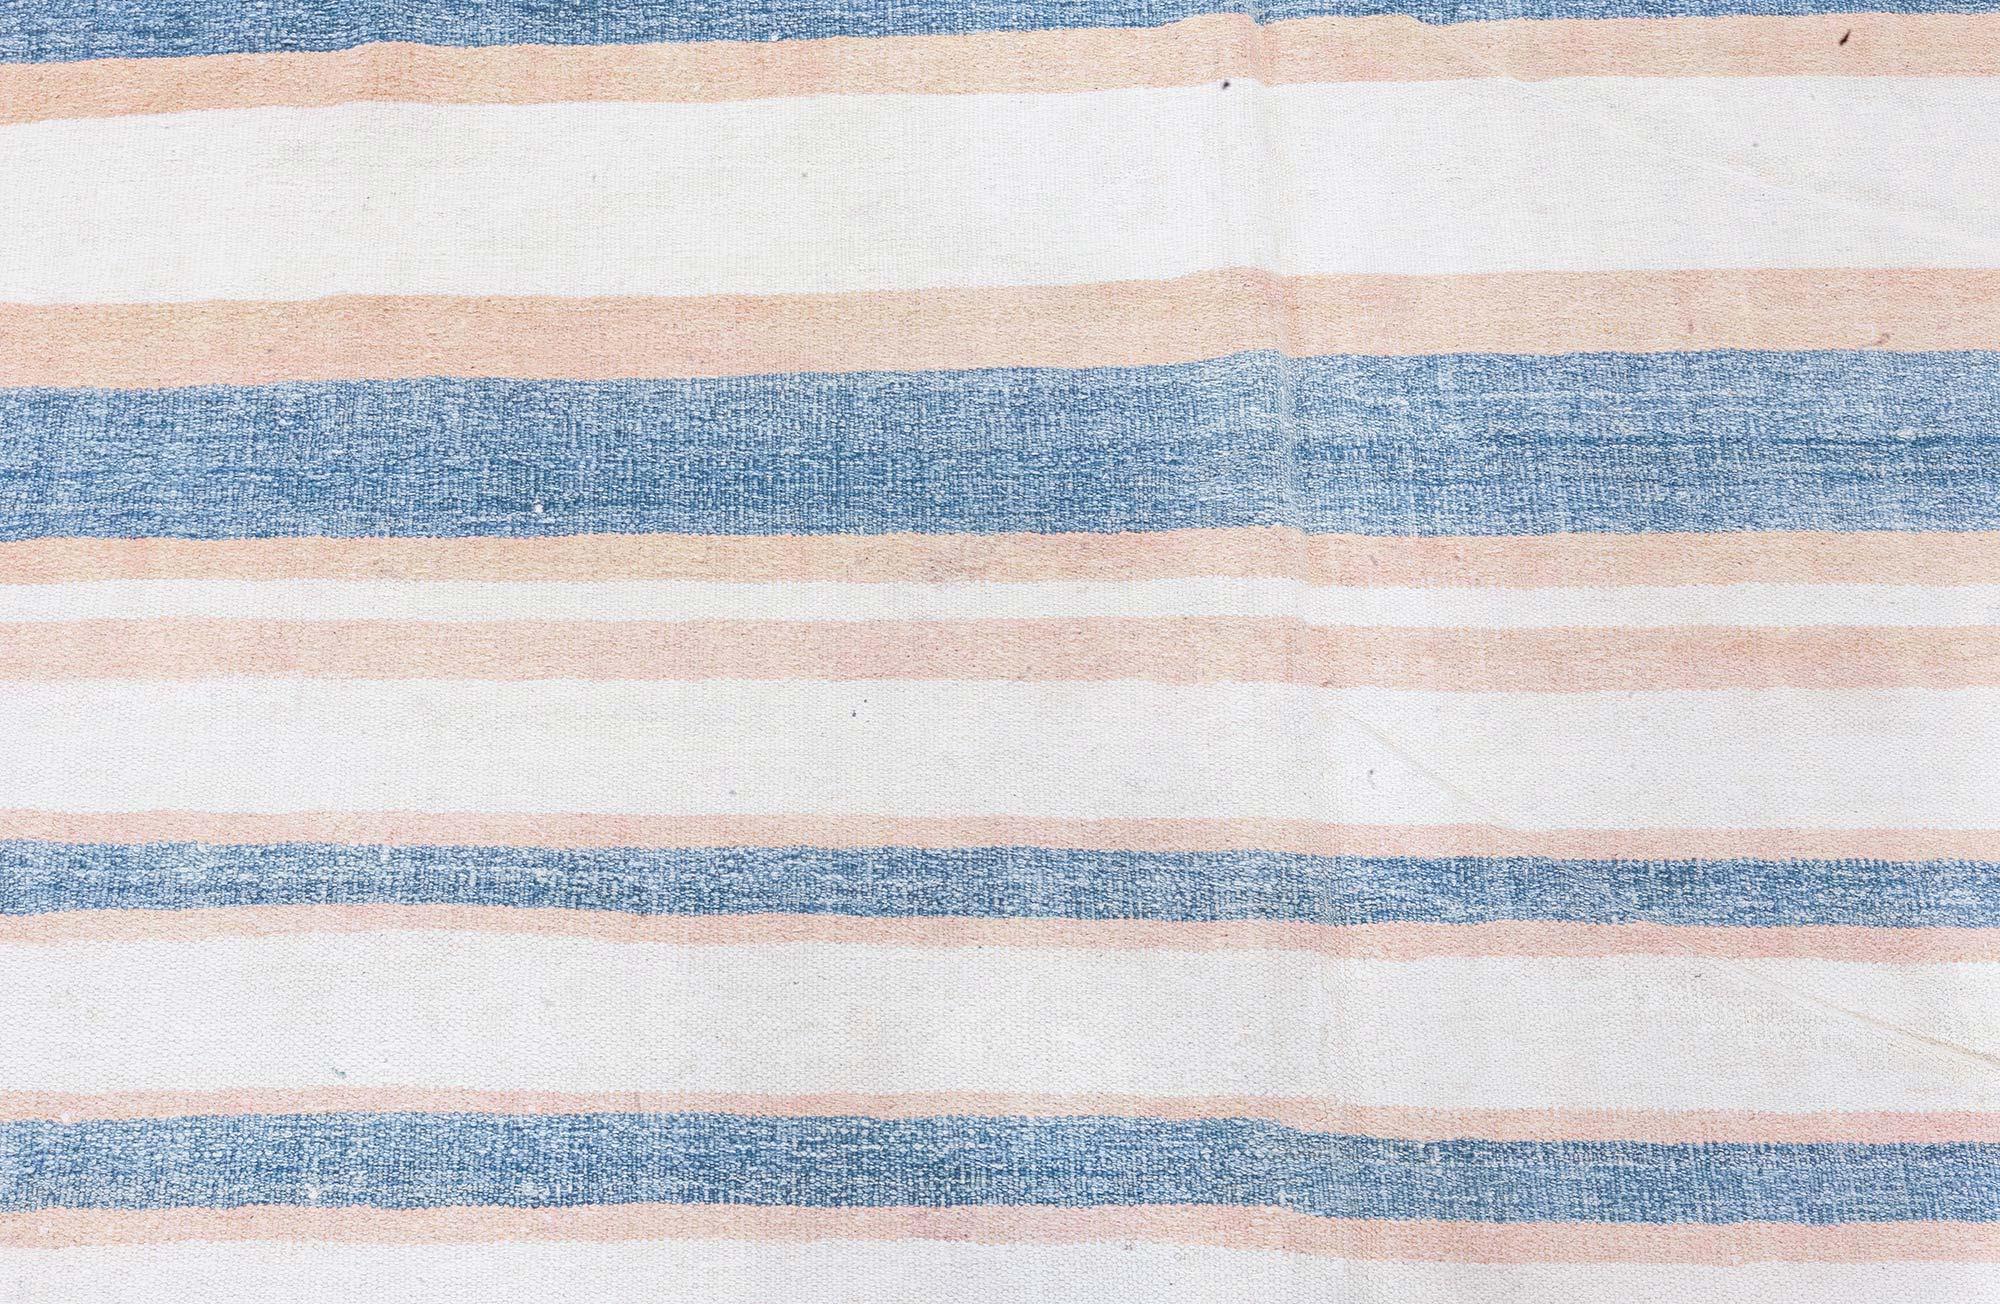 Vintage Indian Dhurrie striped blue beige rug.
Size: 14'5